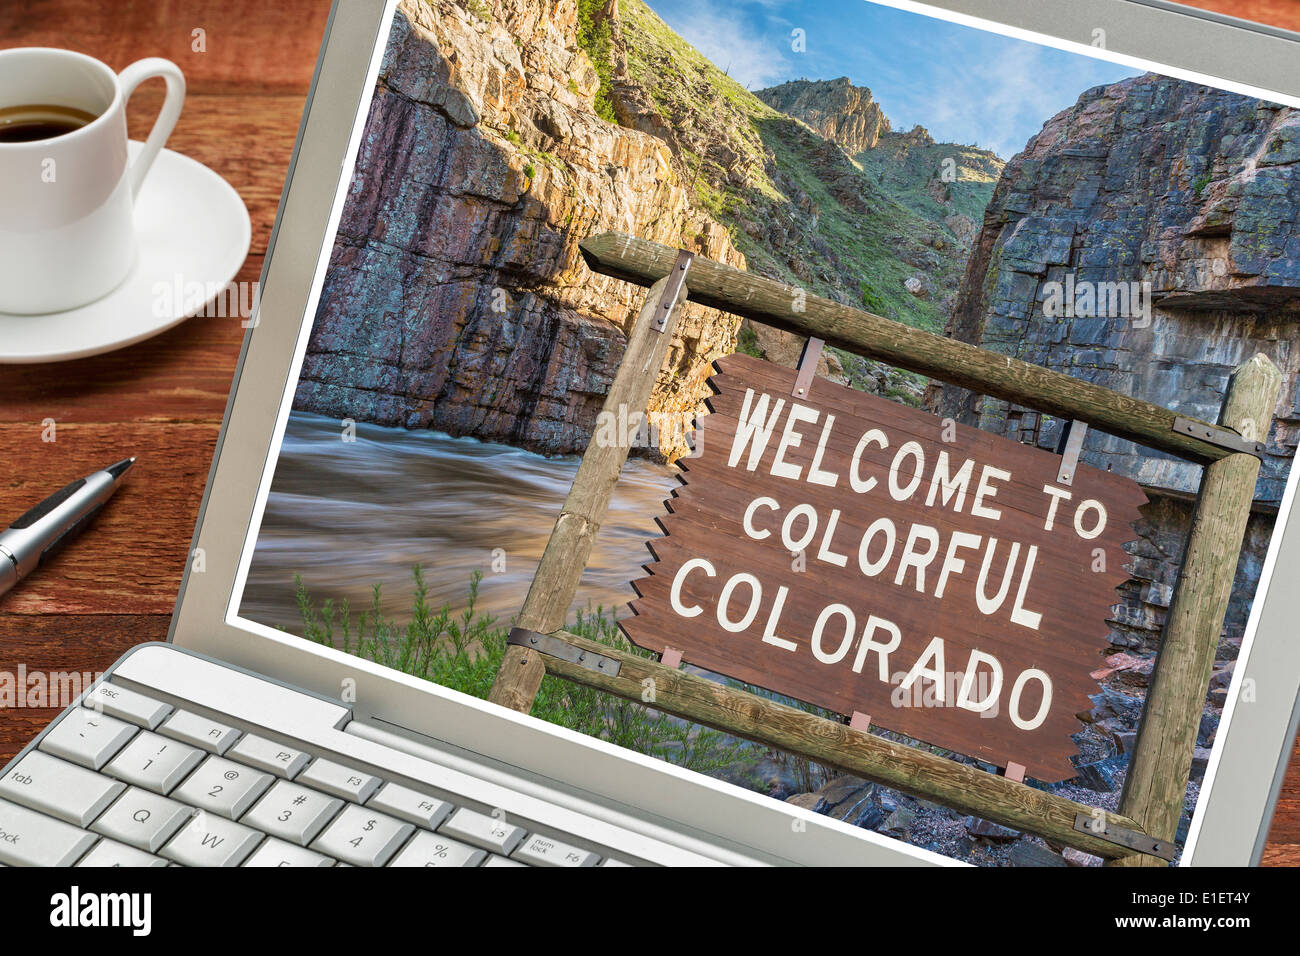 Colorado-Willkommens-Schild auf einem Laptop mit einer Tasse Kaffee - Planung Urlaub Konzept Stockfoto